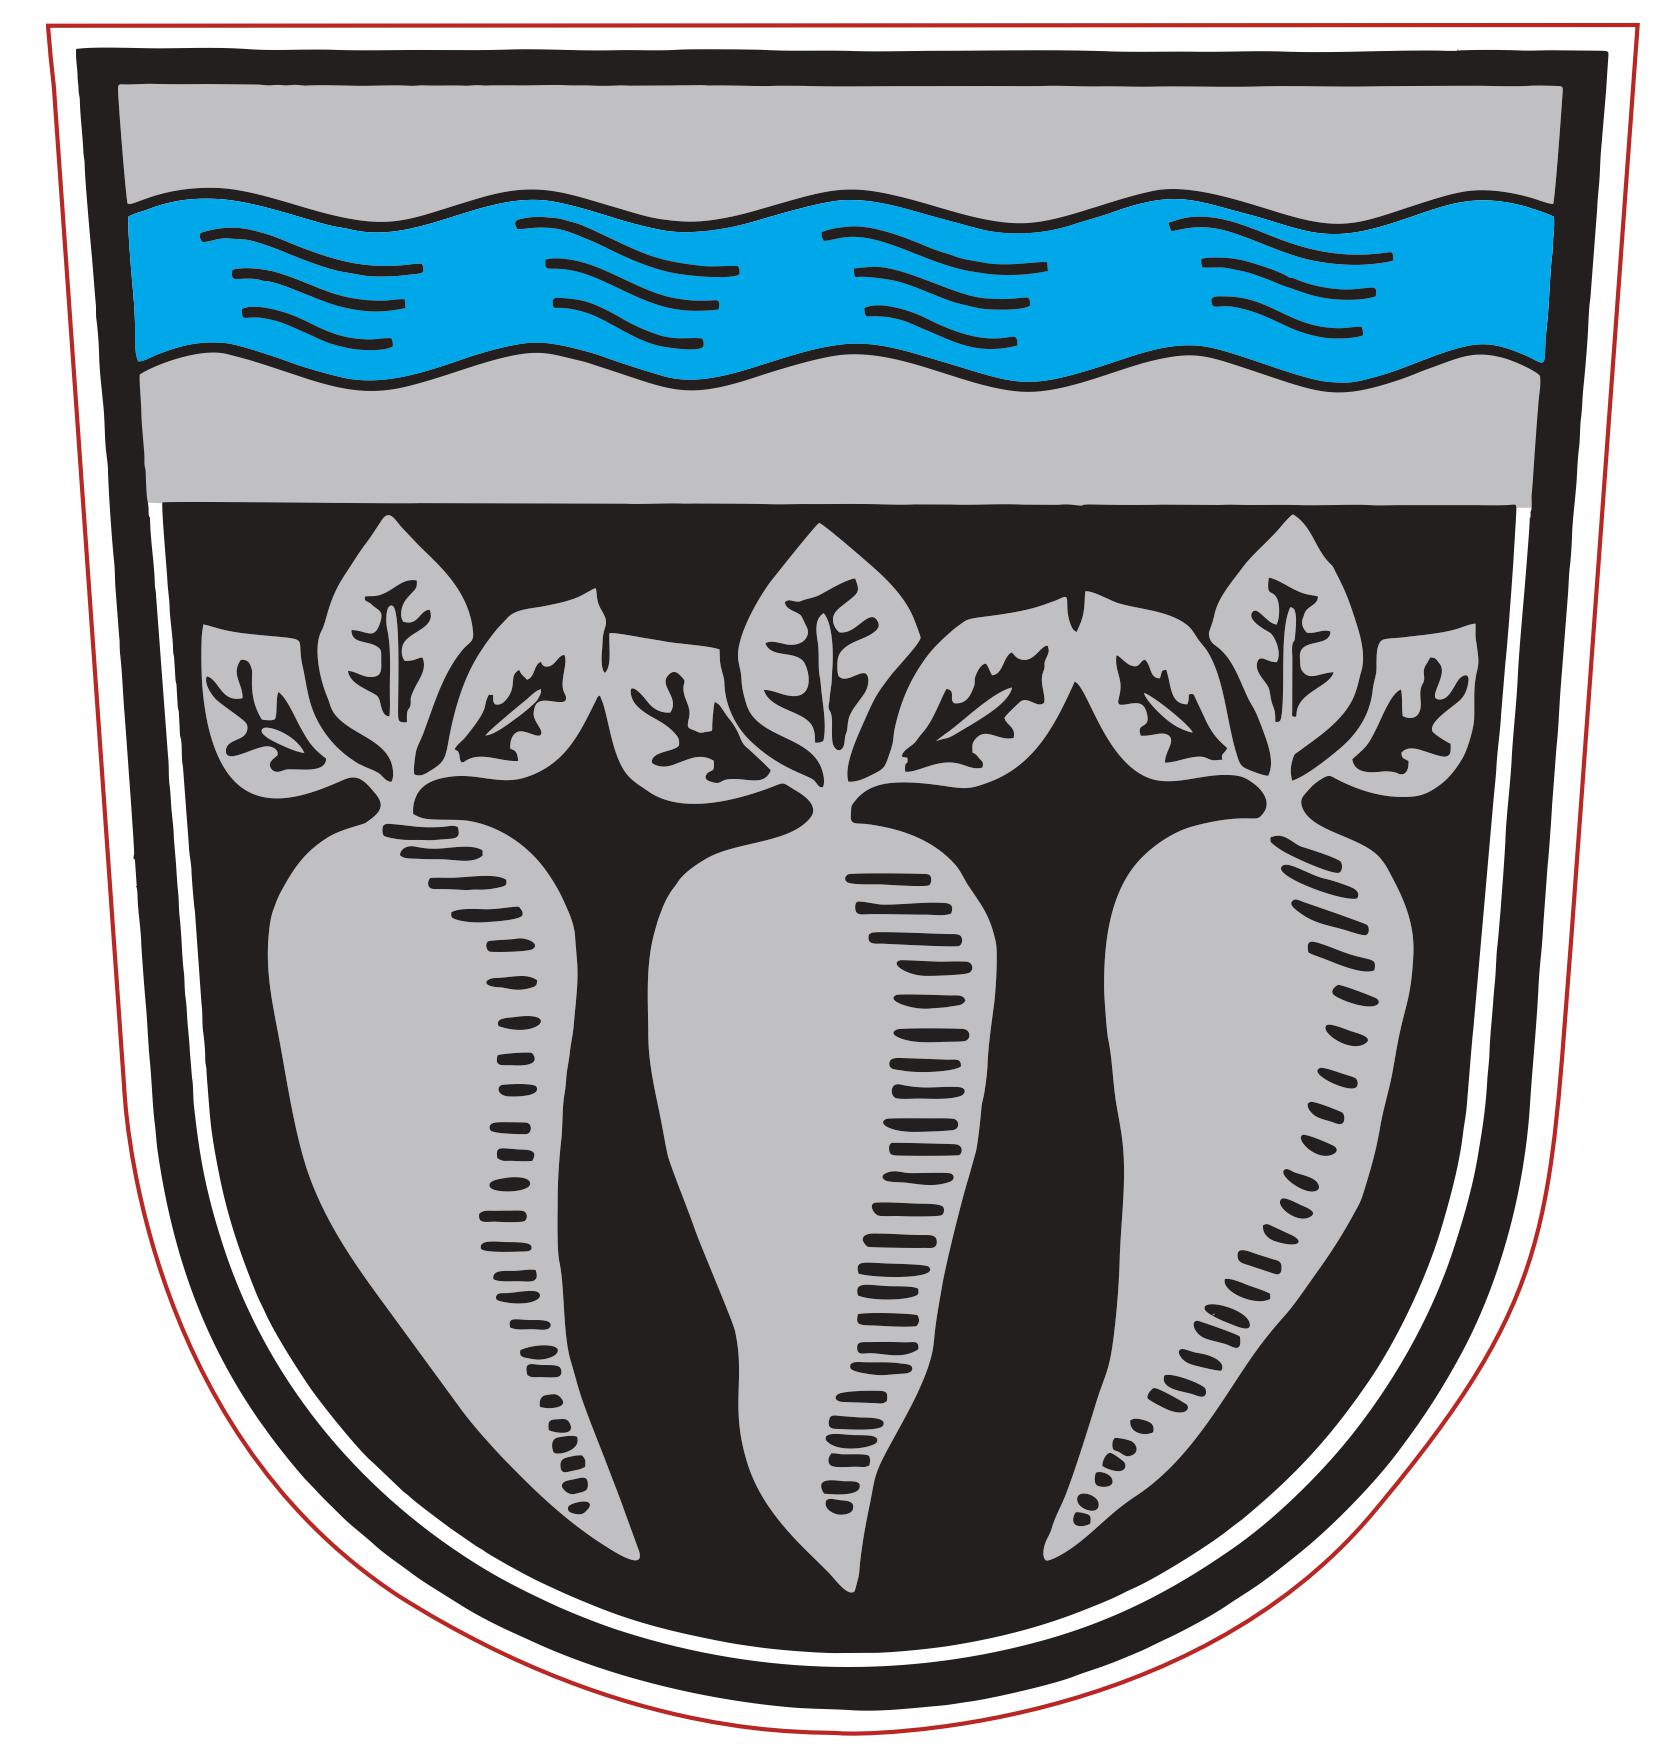 Wappen der Gemeinde Pfatter, 3 silberne Rüben mit silbernen Blättern